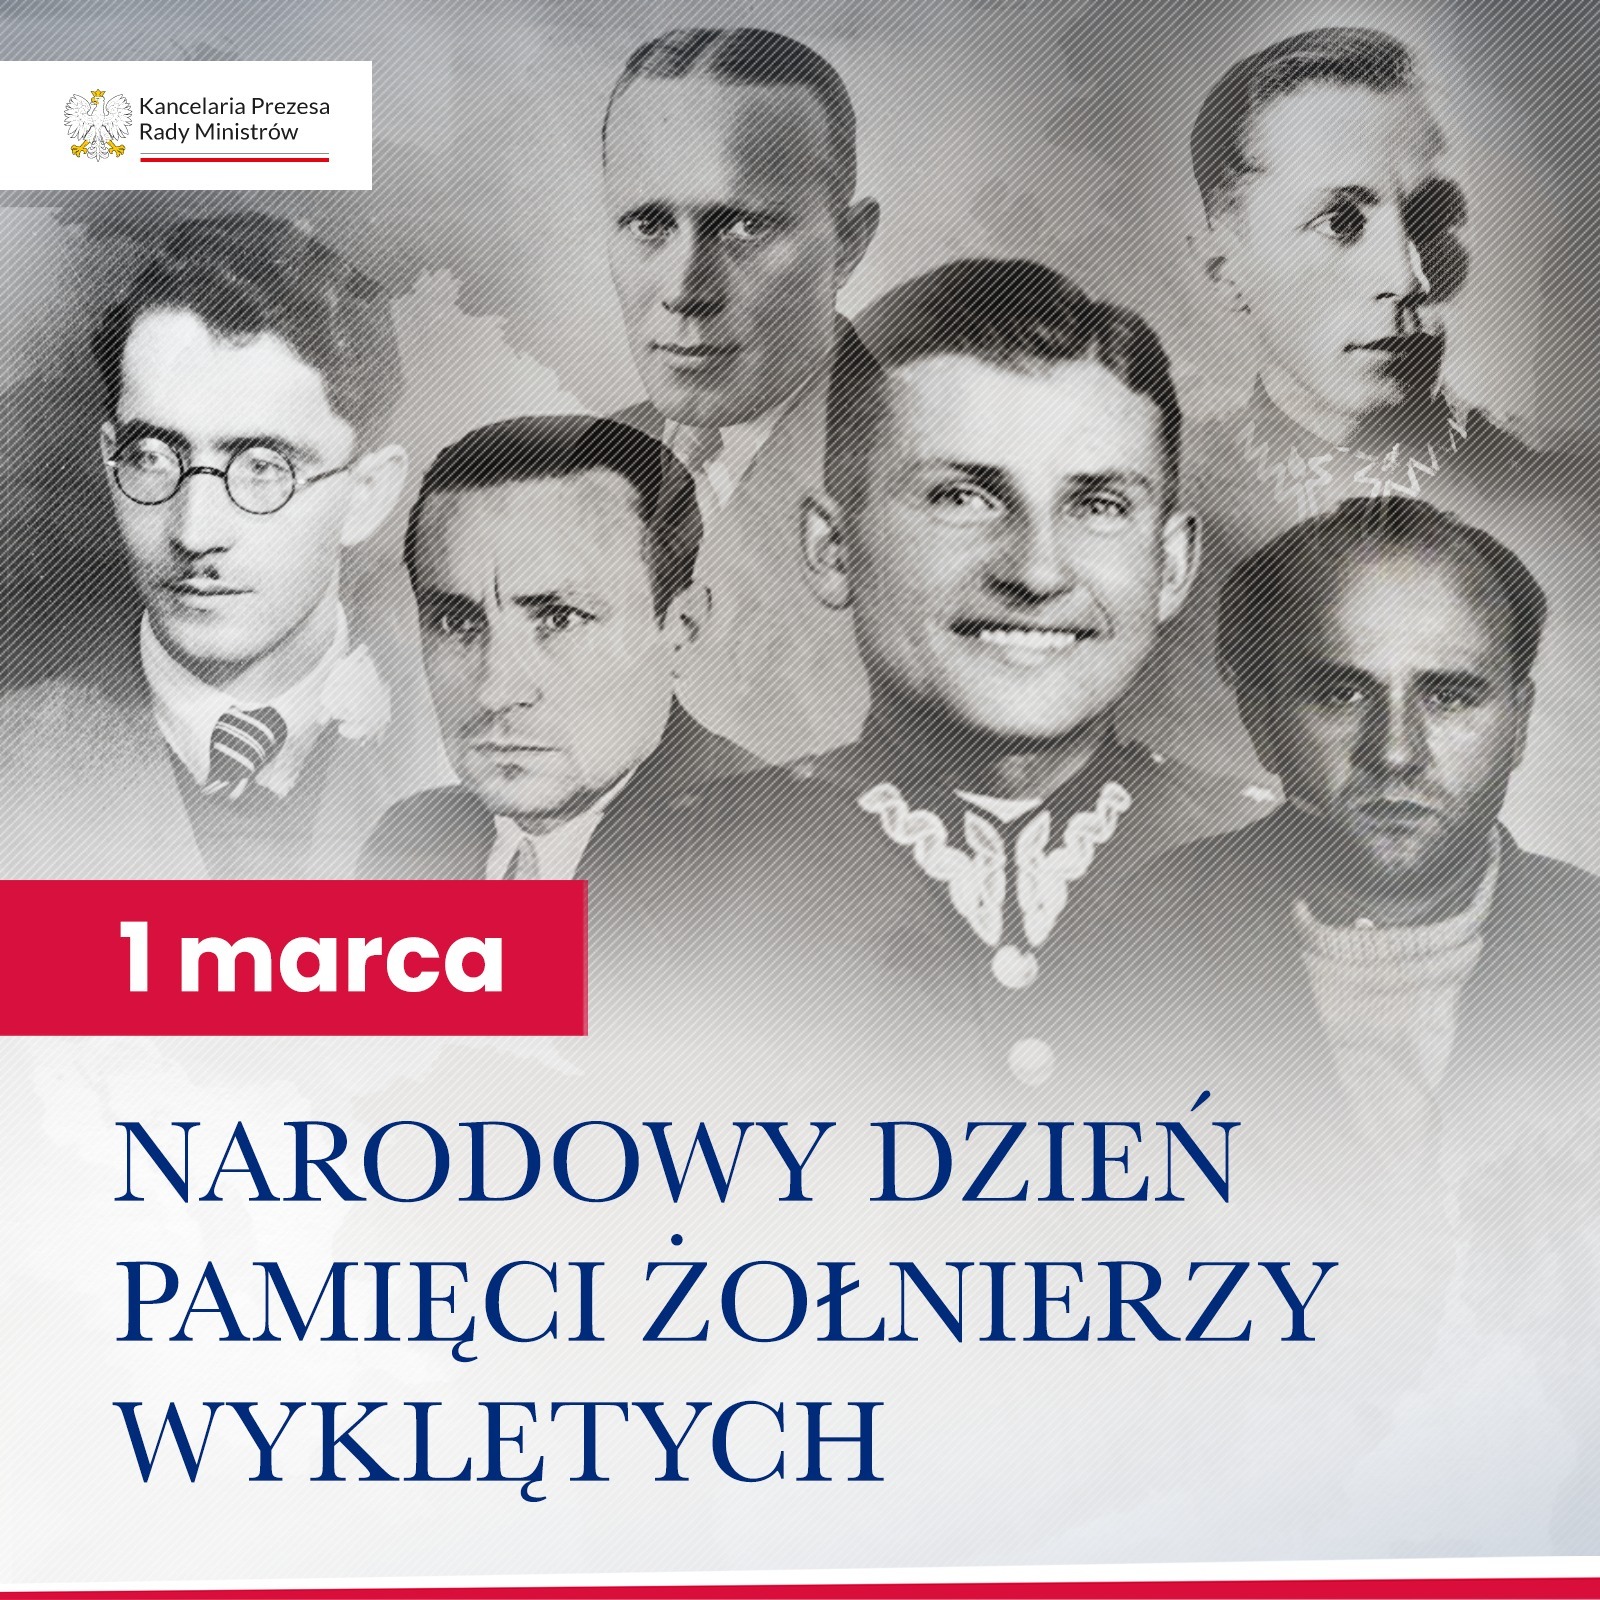 Na górze logo urzędu, tj. orzeł i napis: Kancelaria Premiera, a pod nim barwy Polski. Pod nim zdjęcia twarzy 6 mężczyzn. Na dole napis: 1 marca Narodowy Dzień Pamięci Żołnierzy Wyklętych.